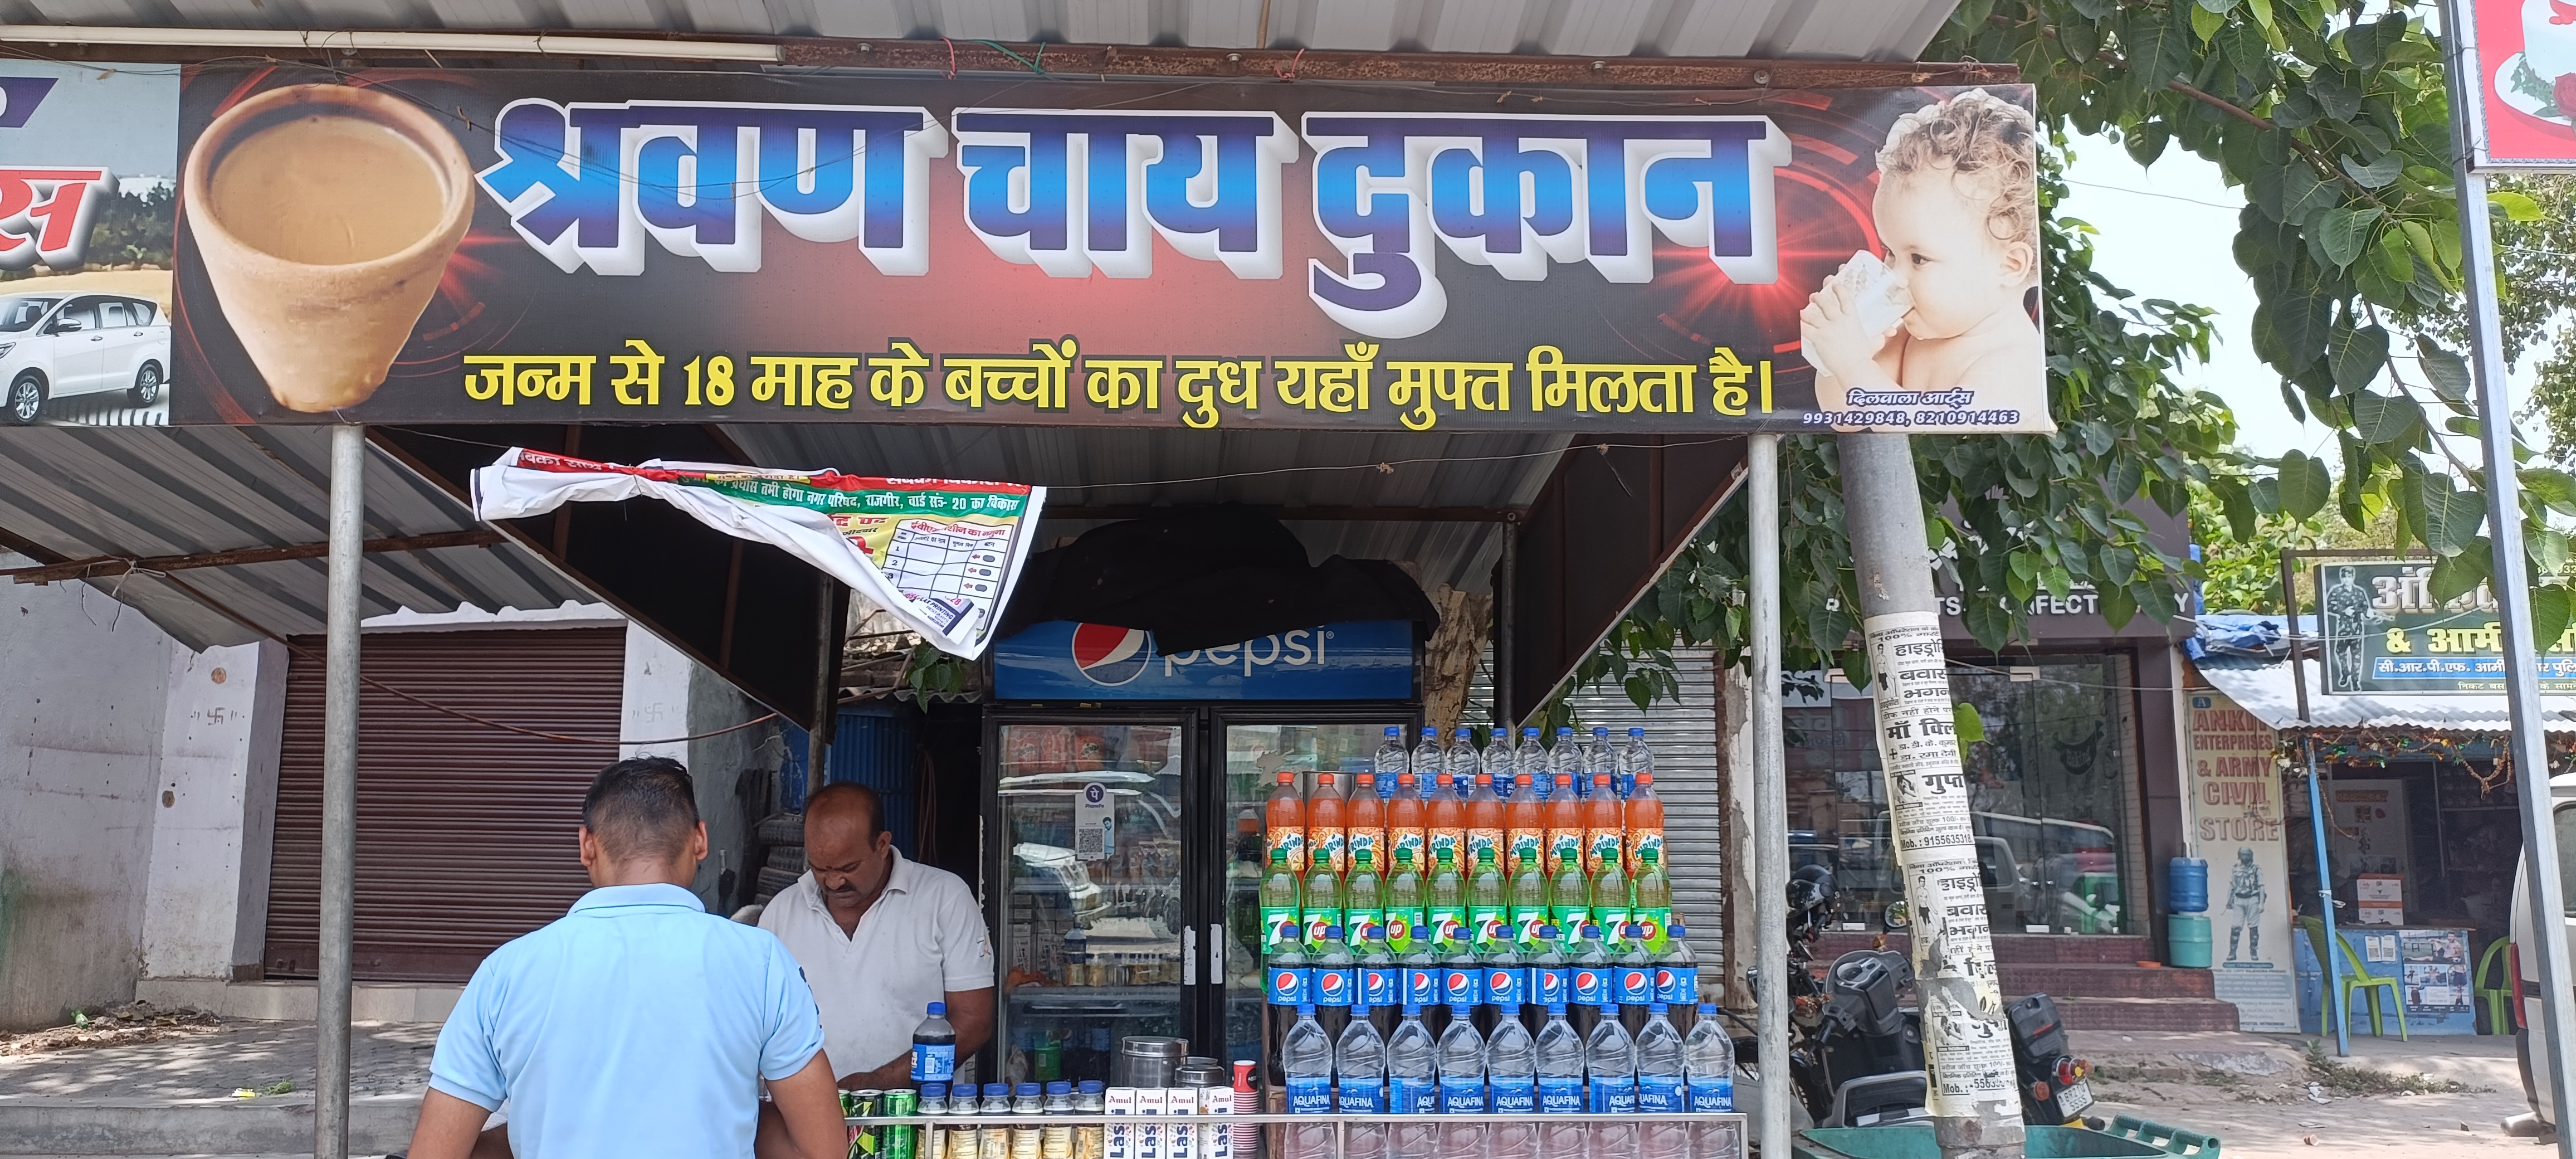 रंजीत कुमार की श्रवण चाय दुकान